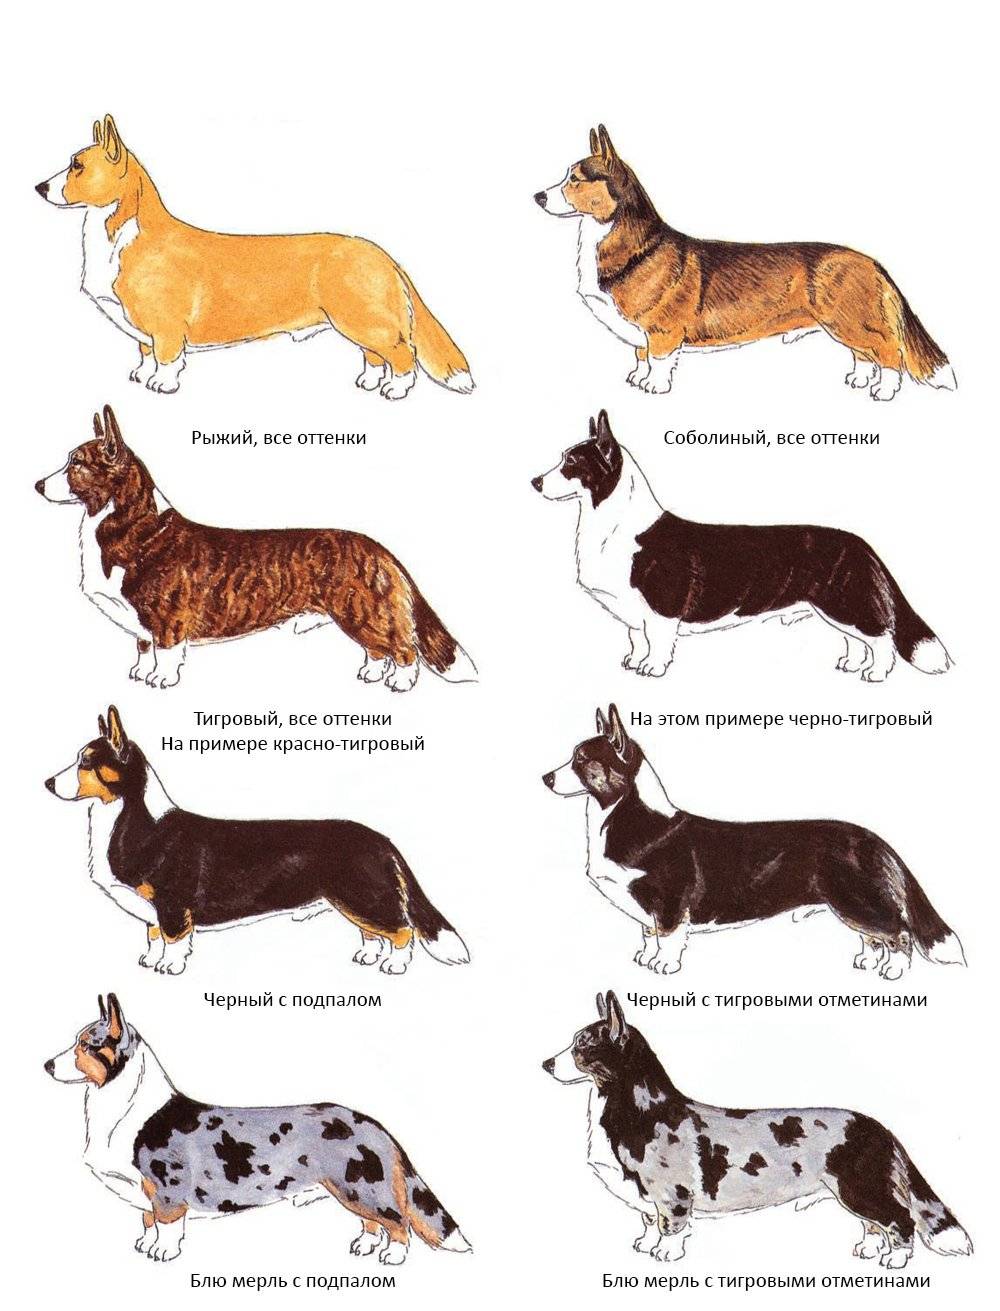 Виды немецких овчарок: описание породных линий с названиями и фотографиями + какие существуют основные окрасы собак данной породы